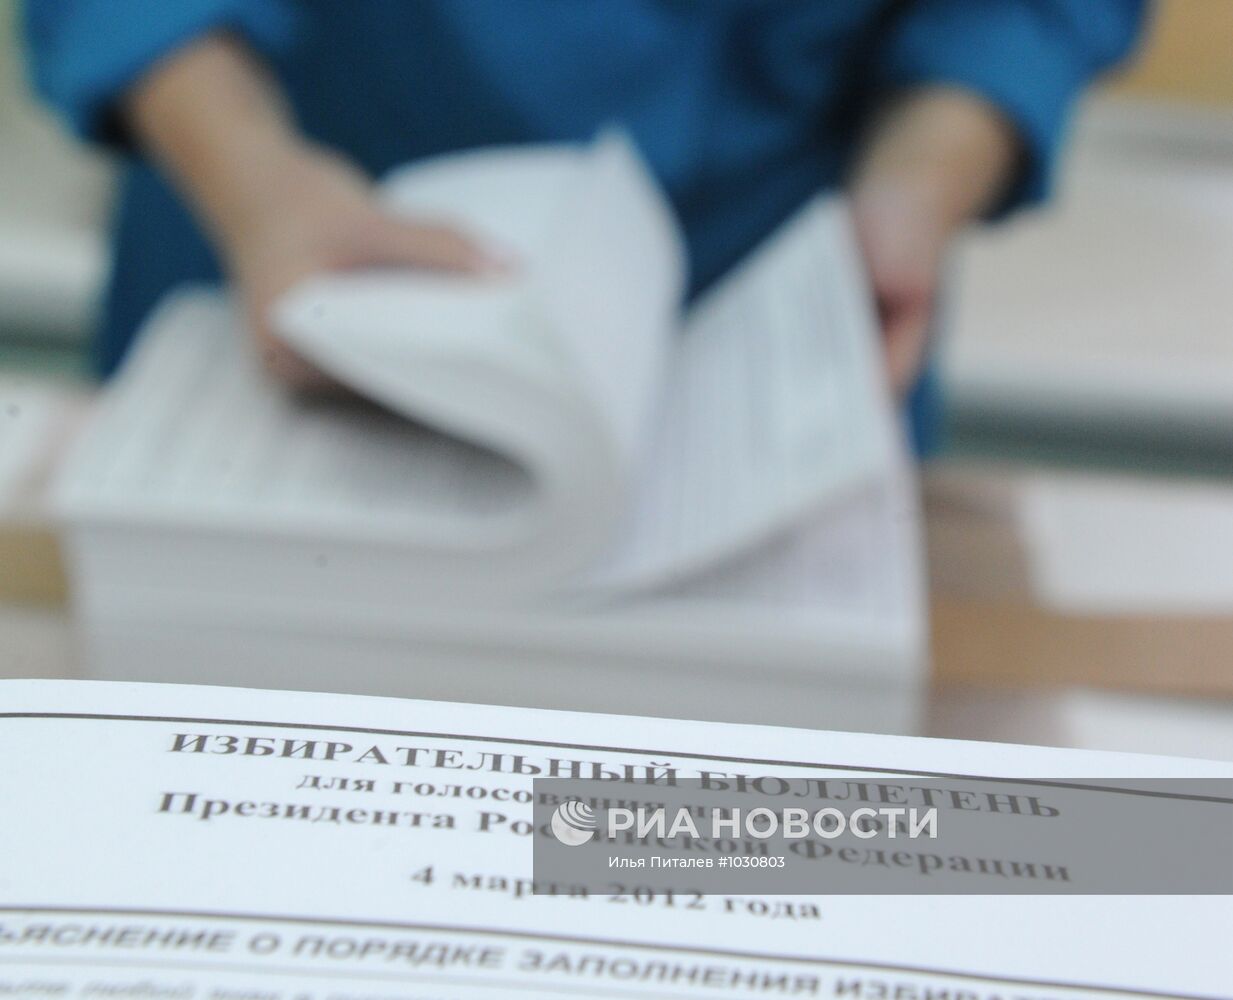 Печать избирательных бюллетеней на ФГУП "Гознак"